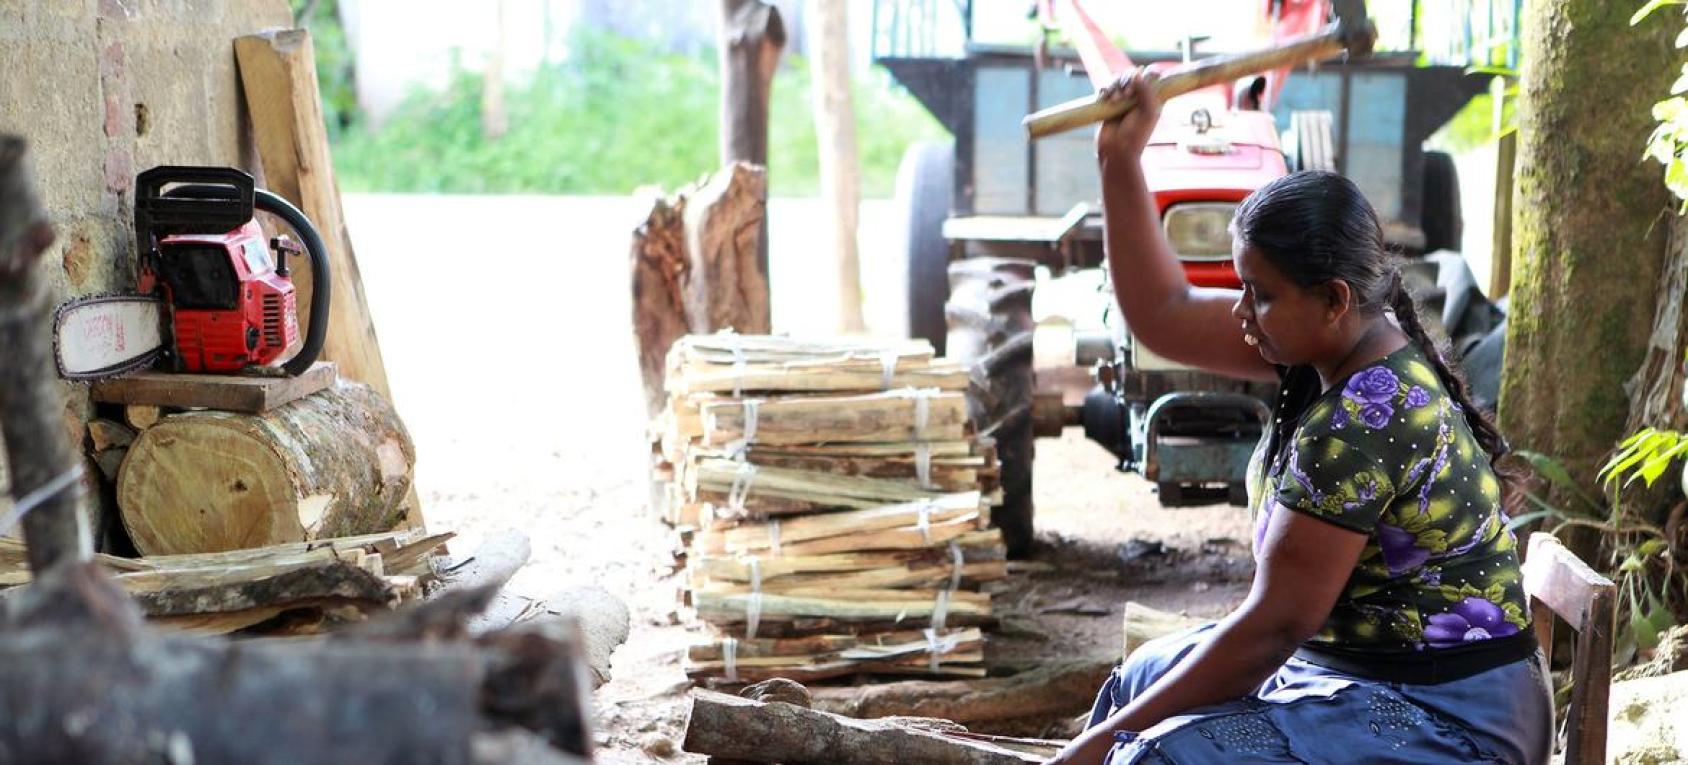 Une femme srilankaise aux cheveux longs tressés est assise à même le sol et taille du bois pour obtenir du petit bois d'allumage.